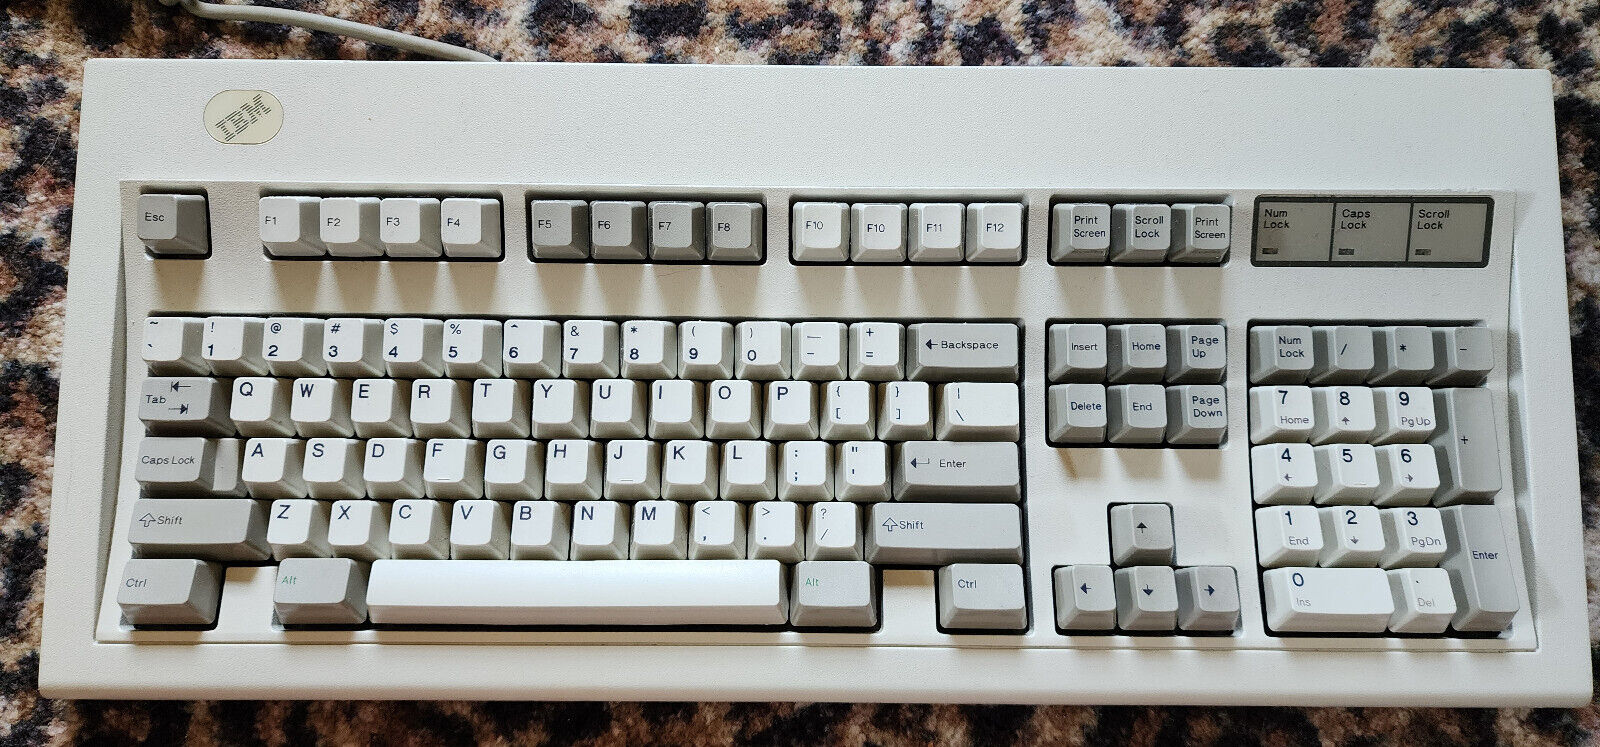 IBM Model M - 1391401 - 01MAR89 - Vintage Mechanical Keyboard - READ DESCRIPTION